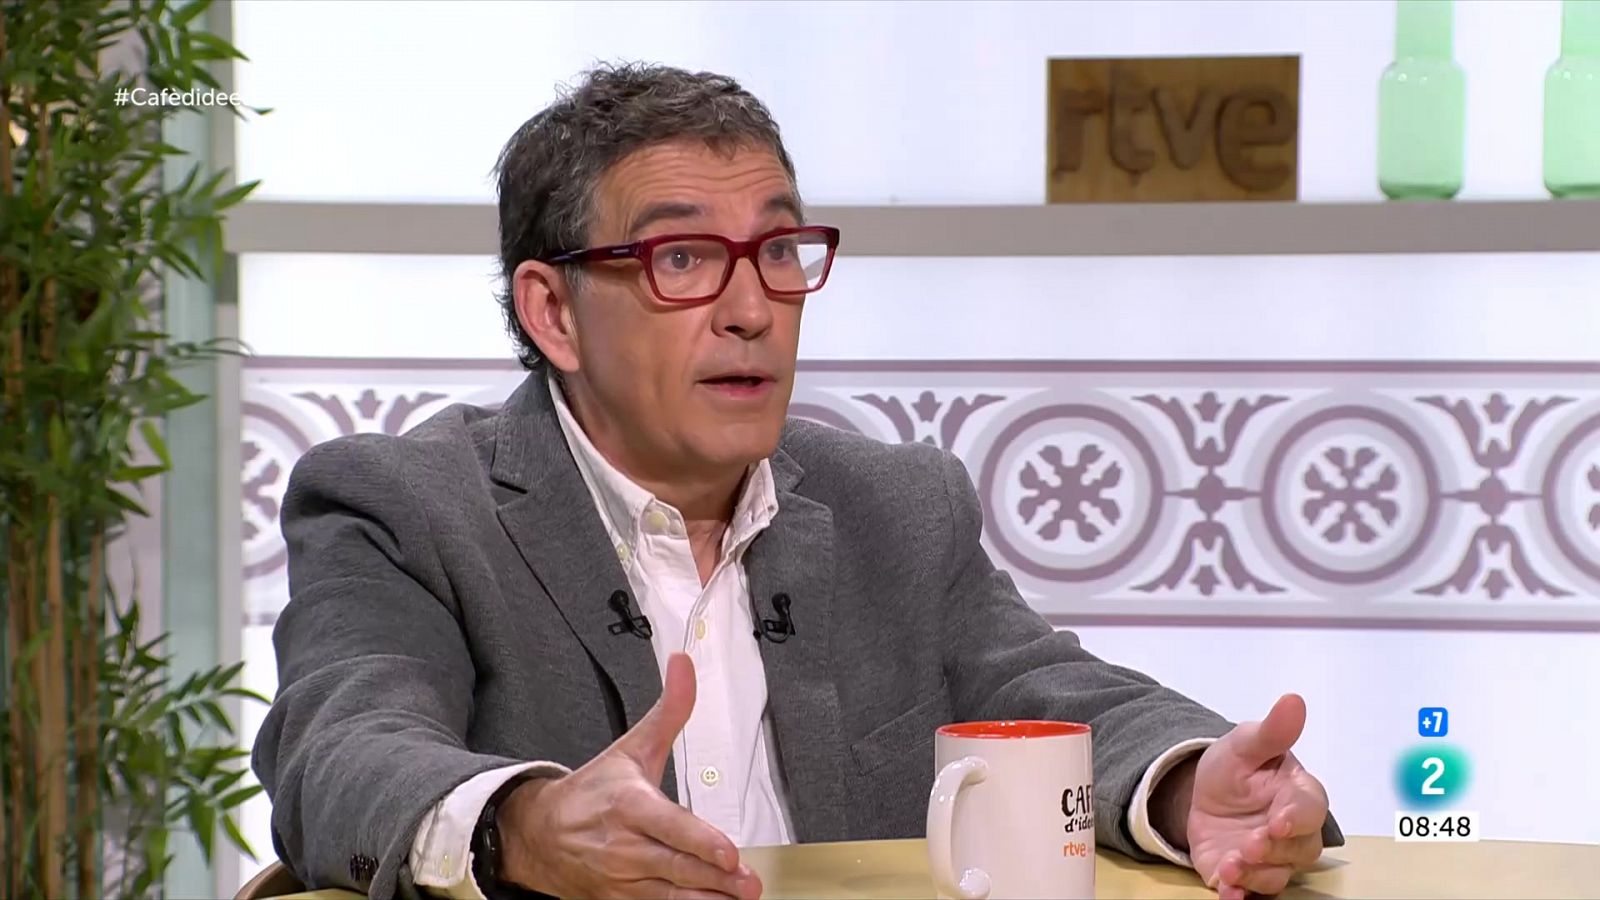 Cafè d'idees - Cuevillas creu que Puigdemont podria tornar a finals de maig